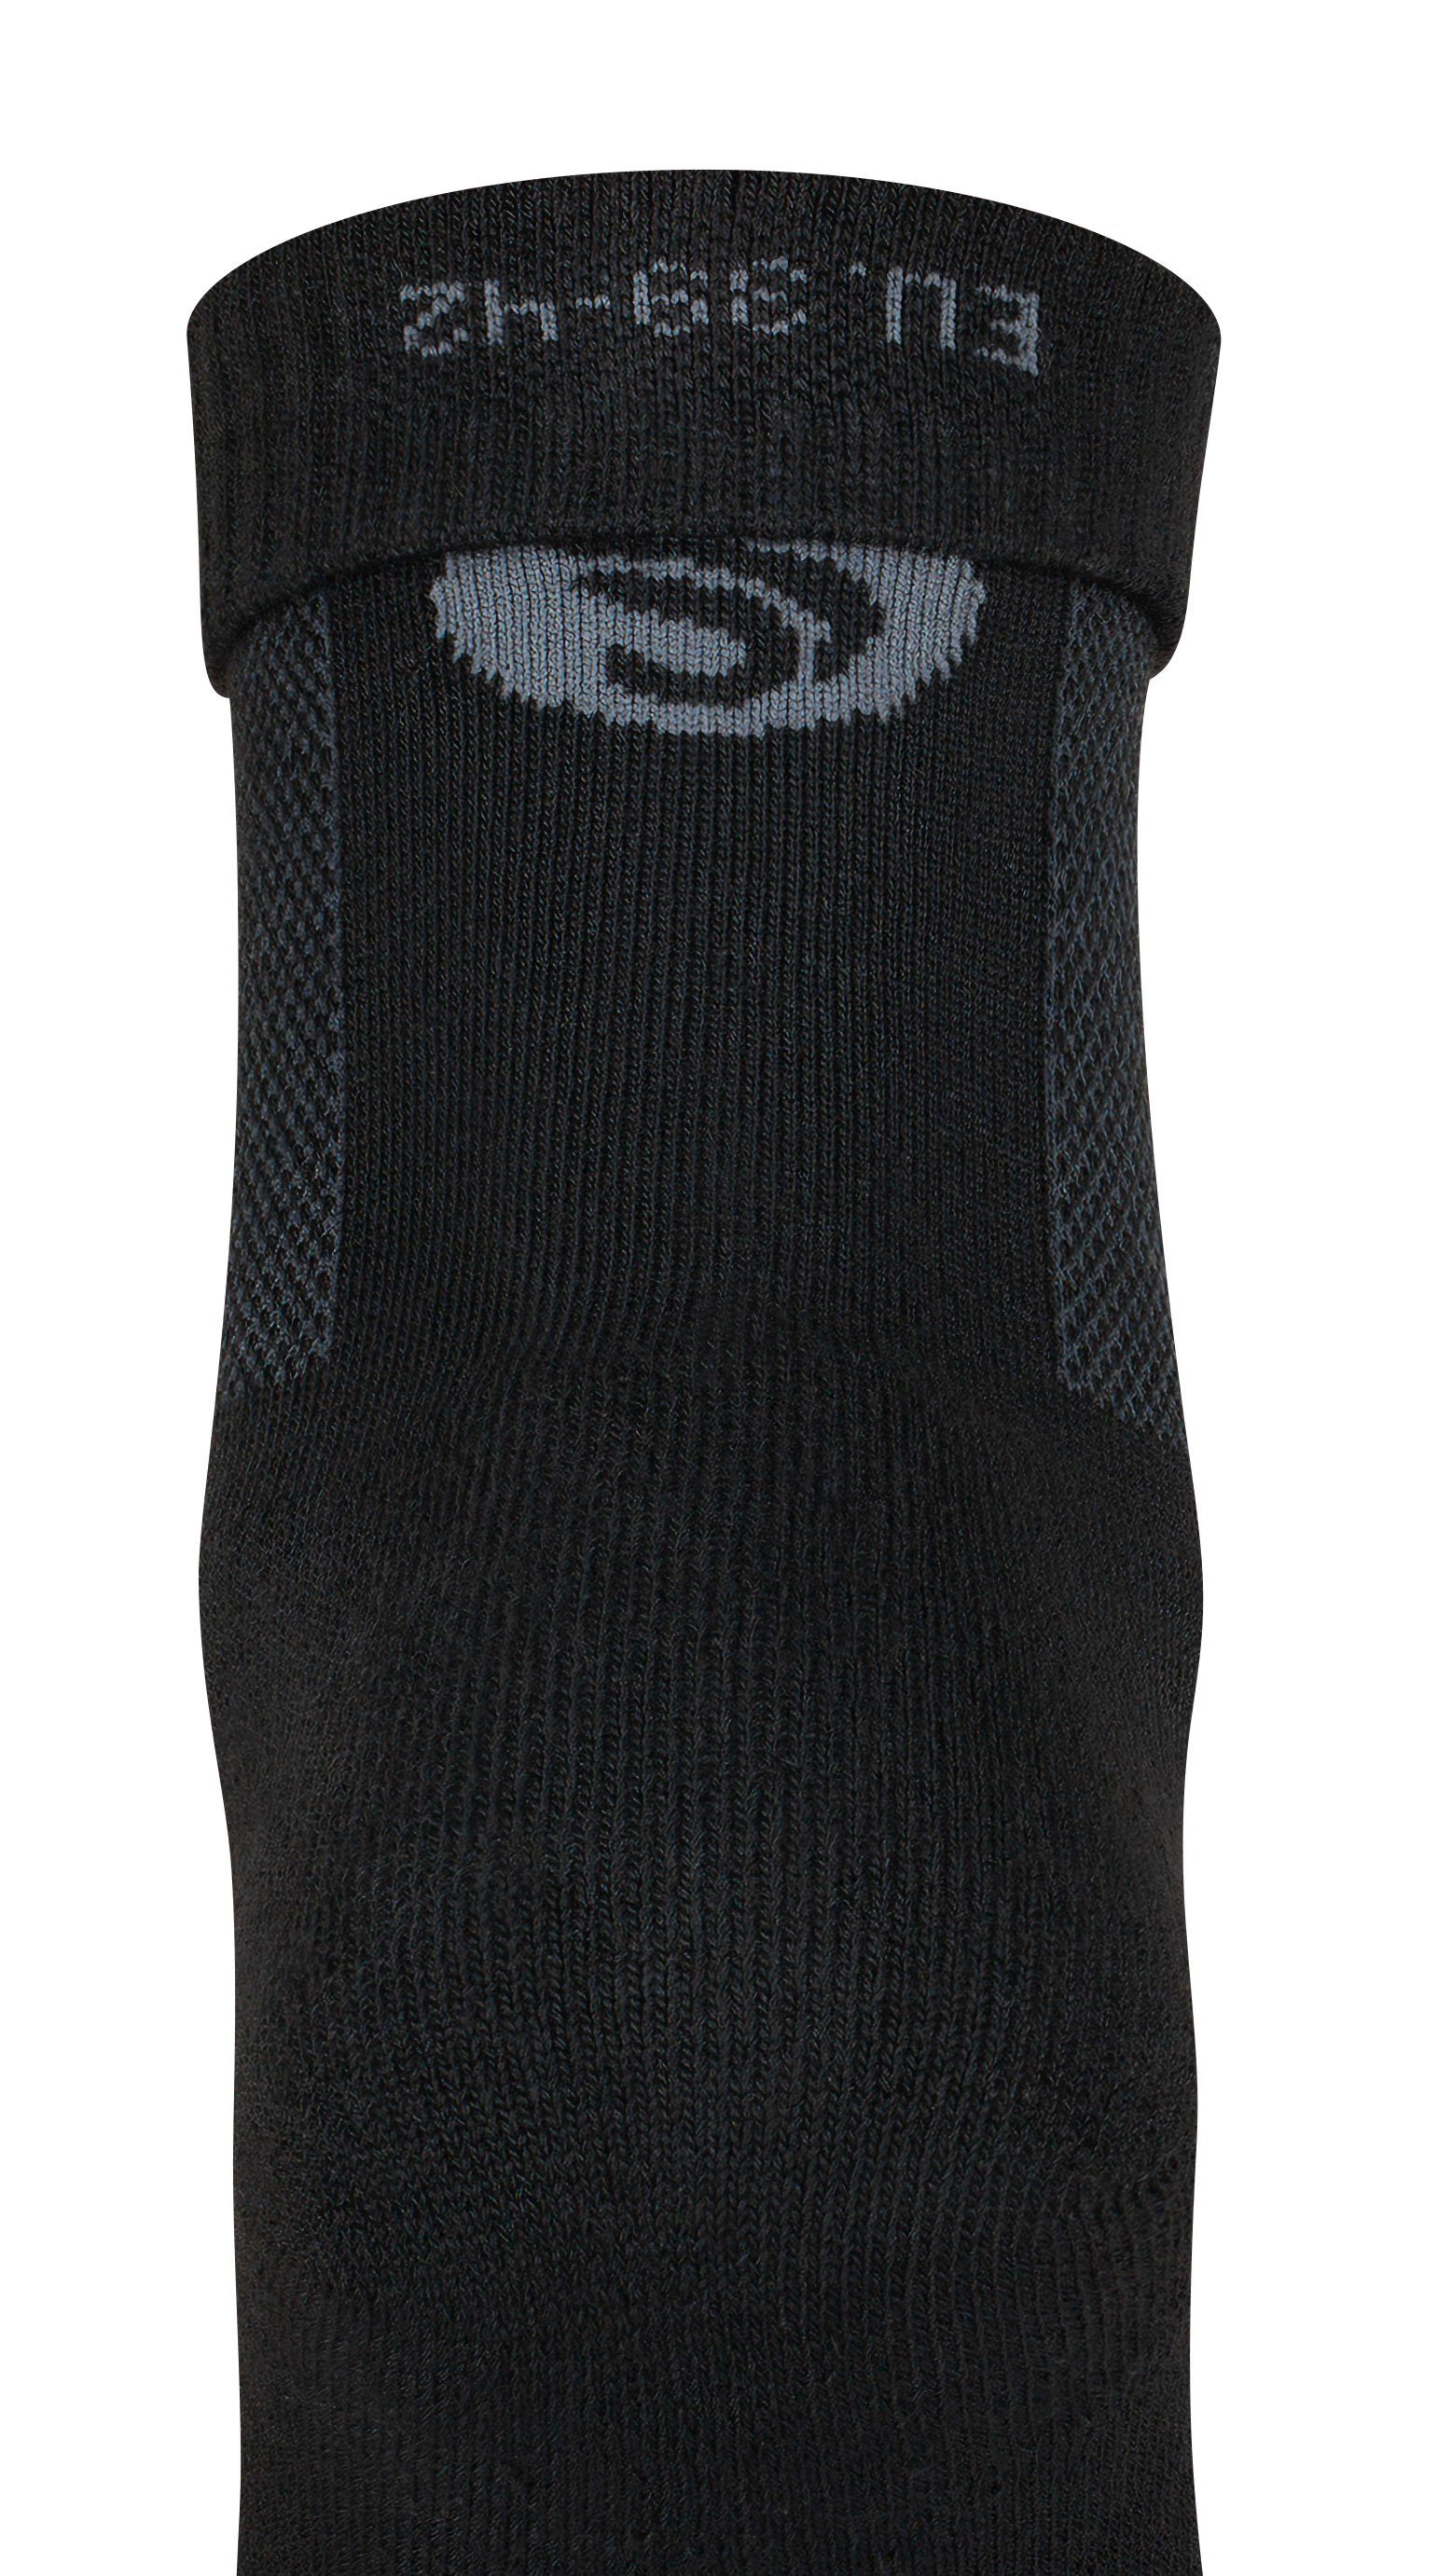 Funktionssocken Outdoor Merino Schwarz Soul® Unisex oder Paar 3 Stark 1 (1-Paar) Socken, Trekking